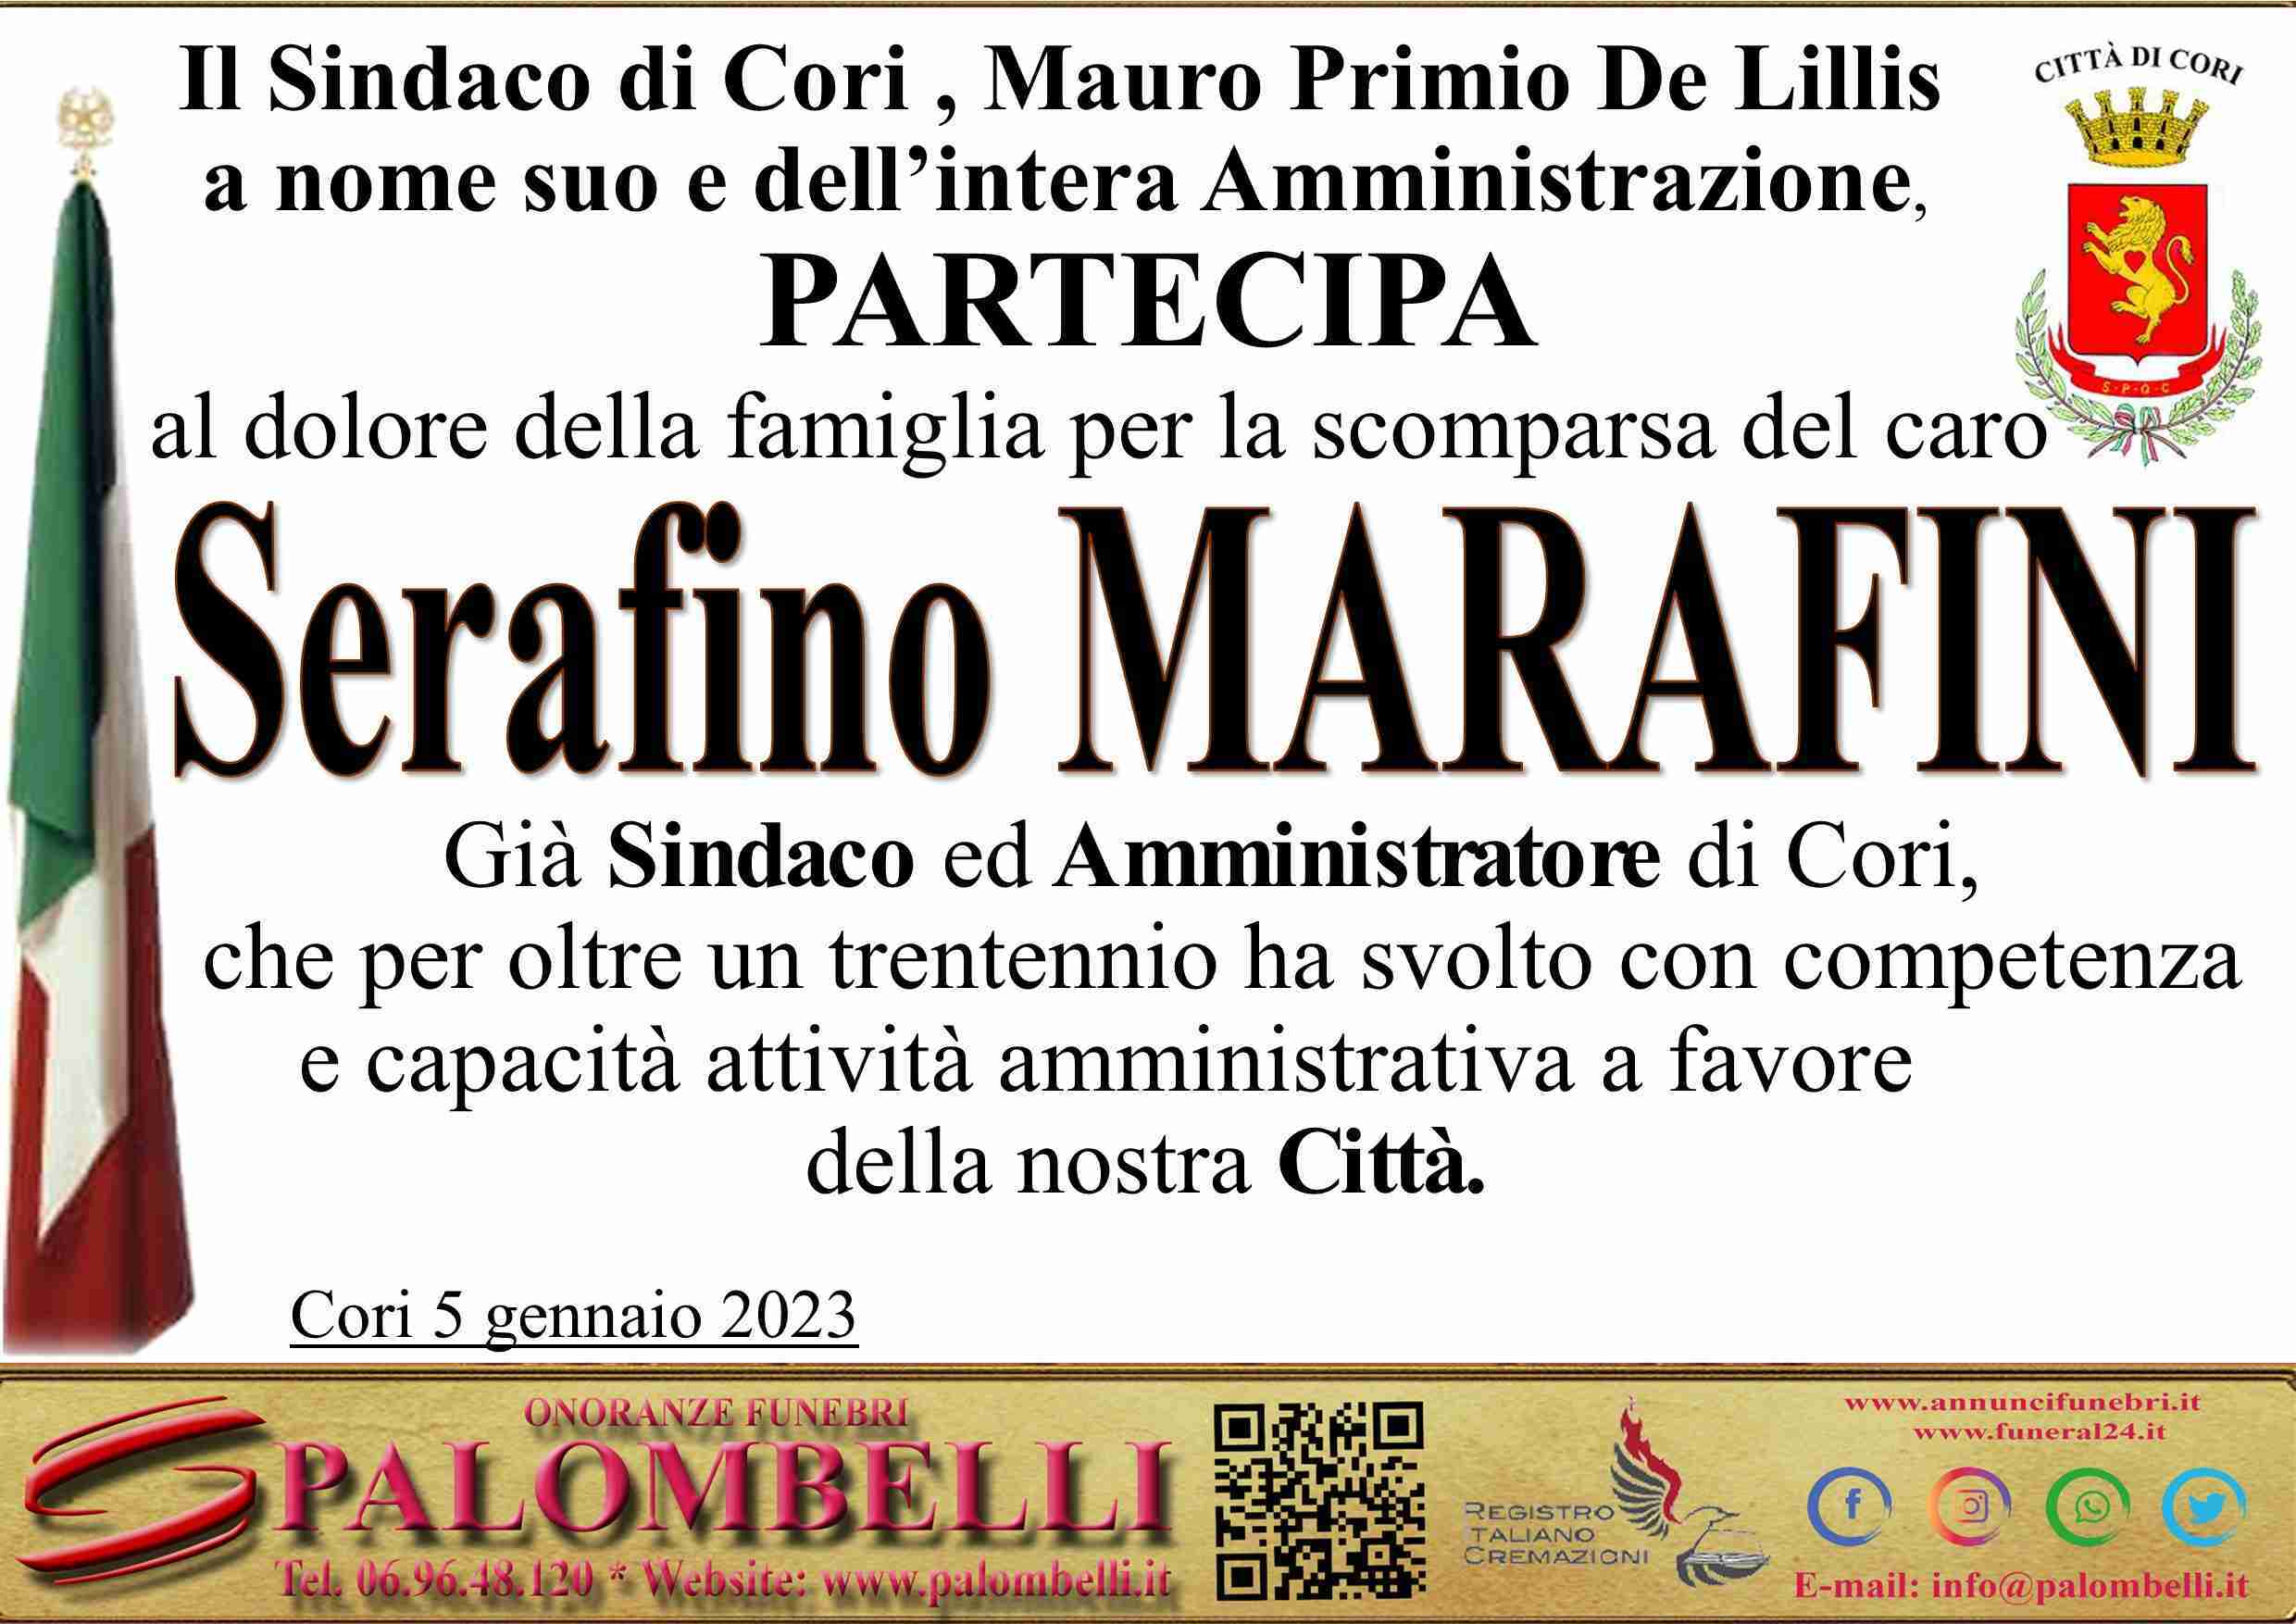 Serafino Marafini